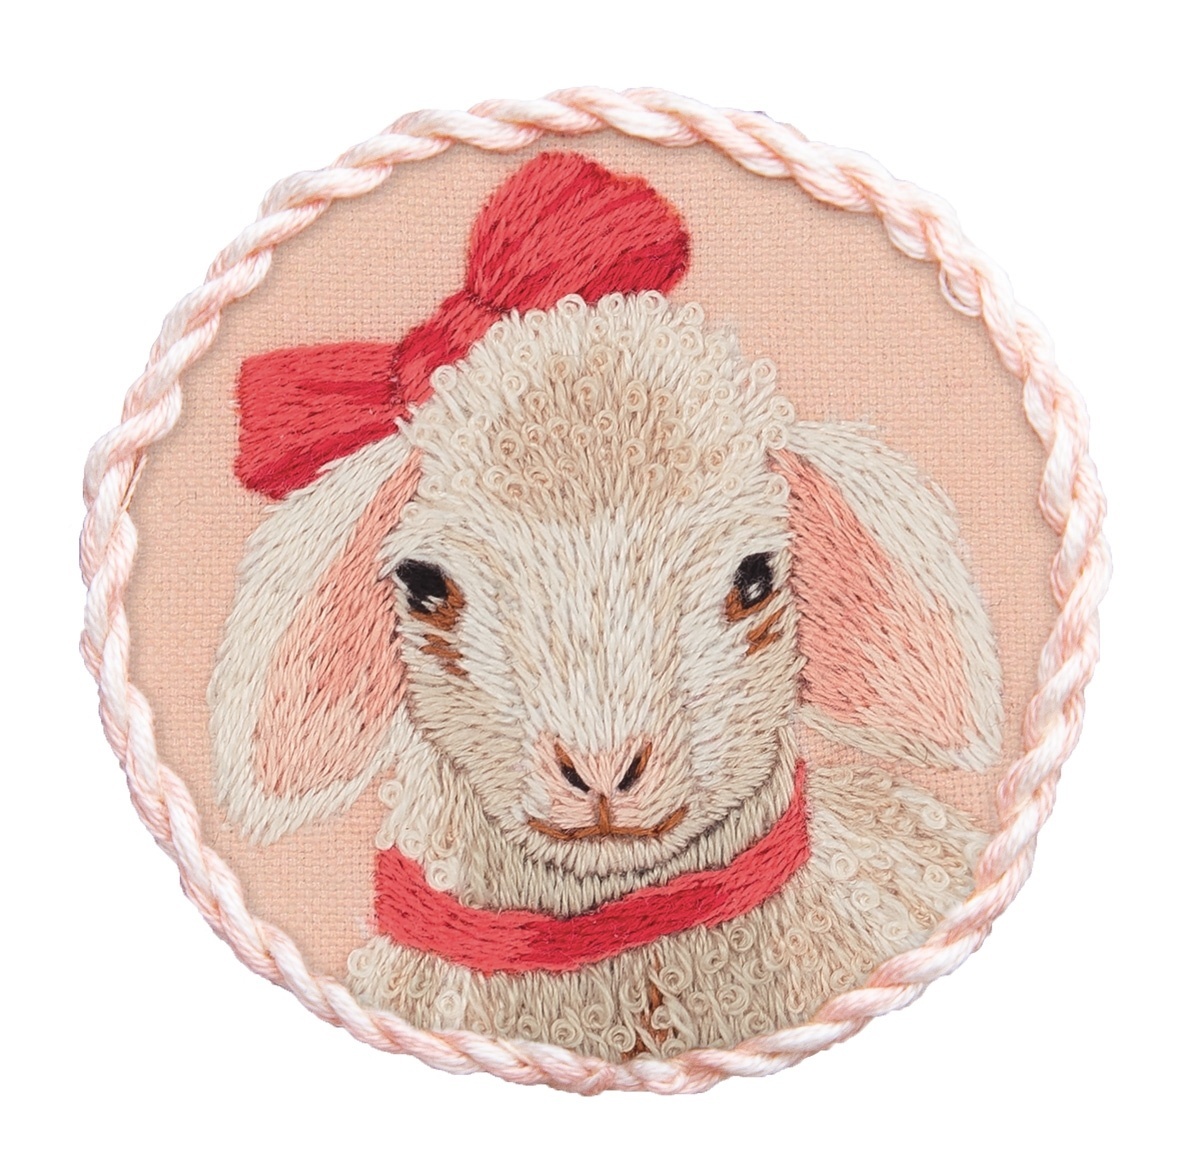 Daisy the Lamb Brooch Embroidery Kit фото 1